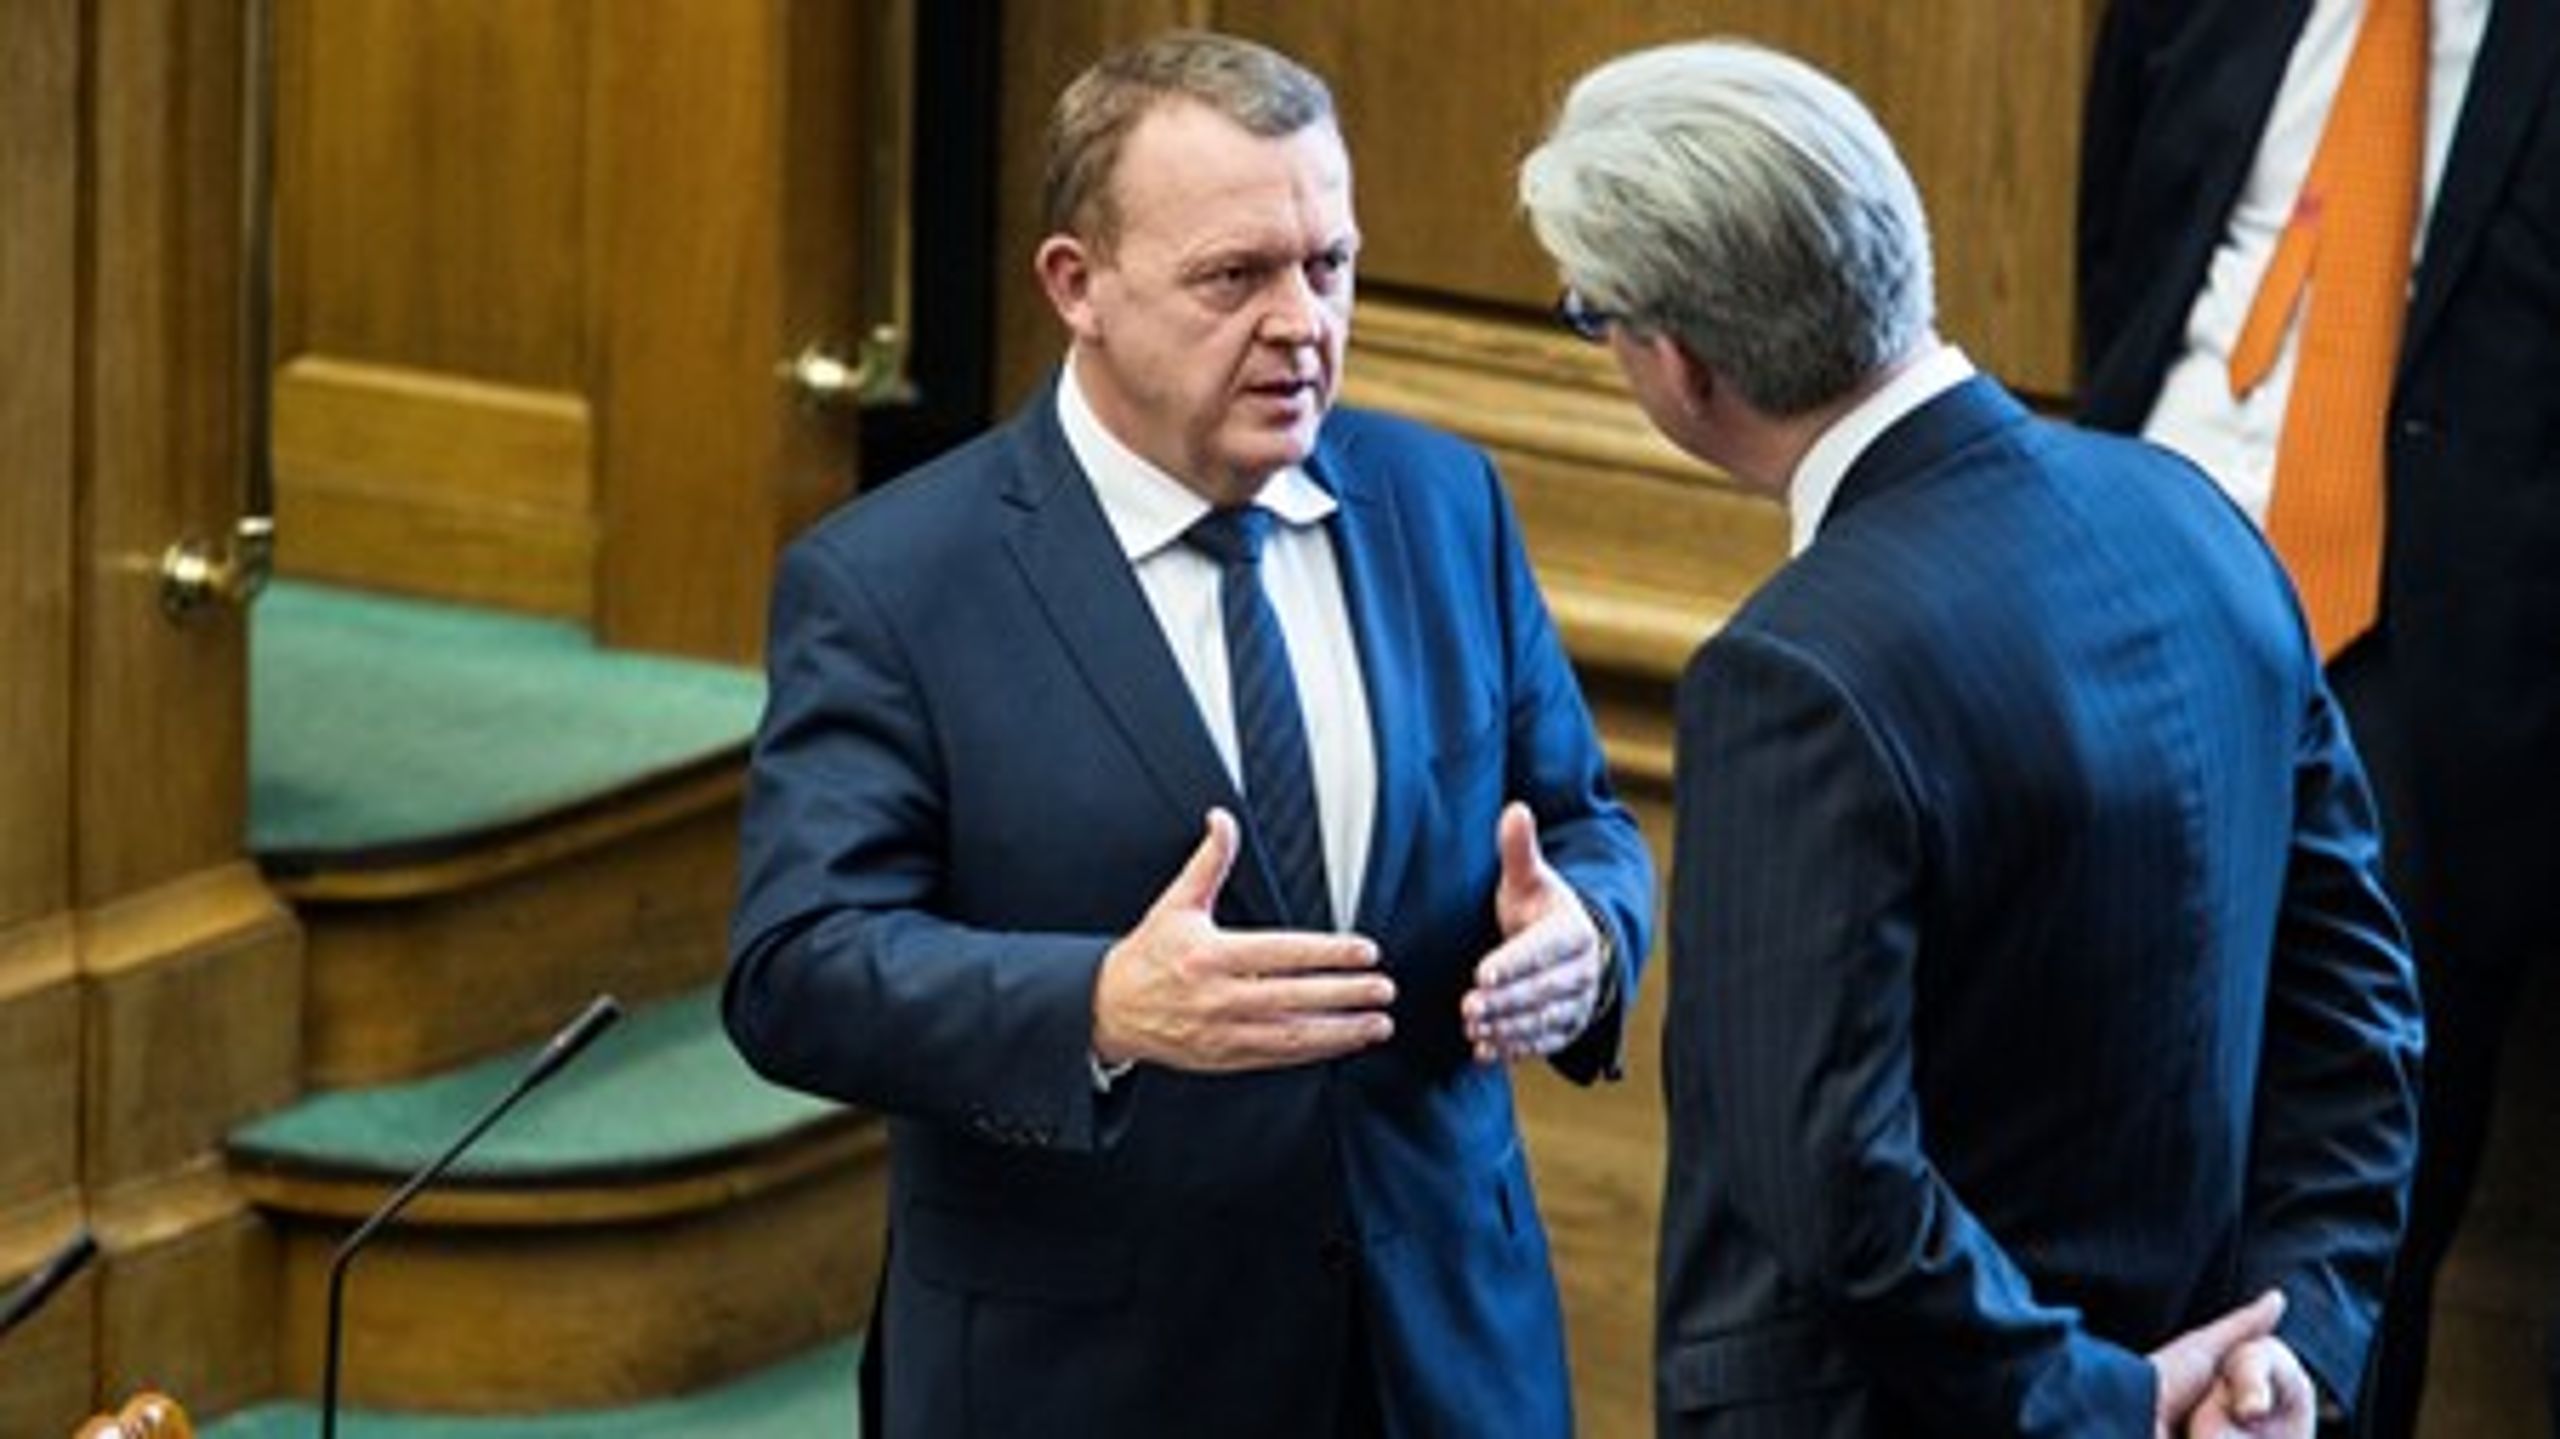 Lars Løkke Rasmussen med justitsminister Søren Pind, der kommer til at få sin del af regeringens vanskelige sager næste år.<br>